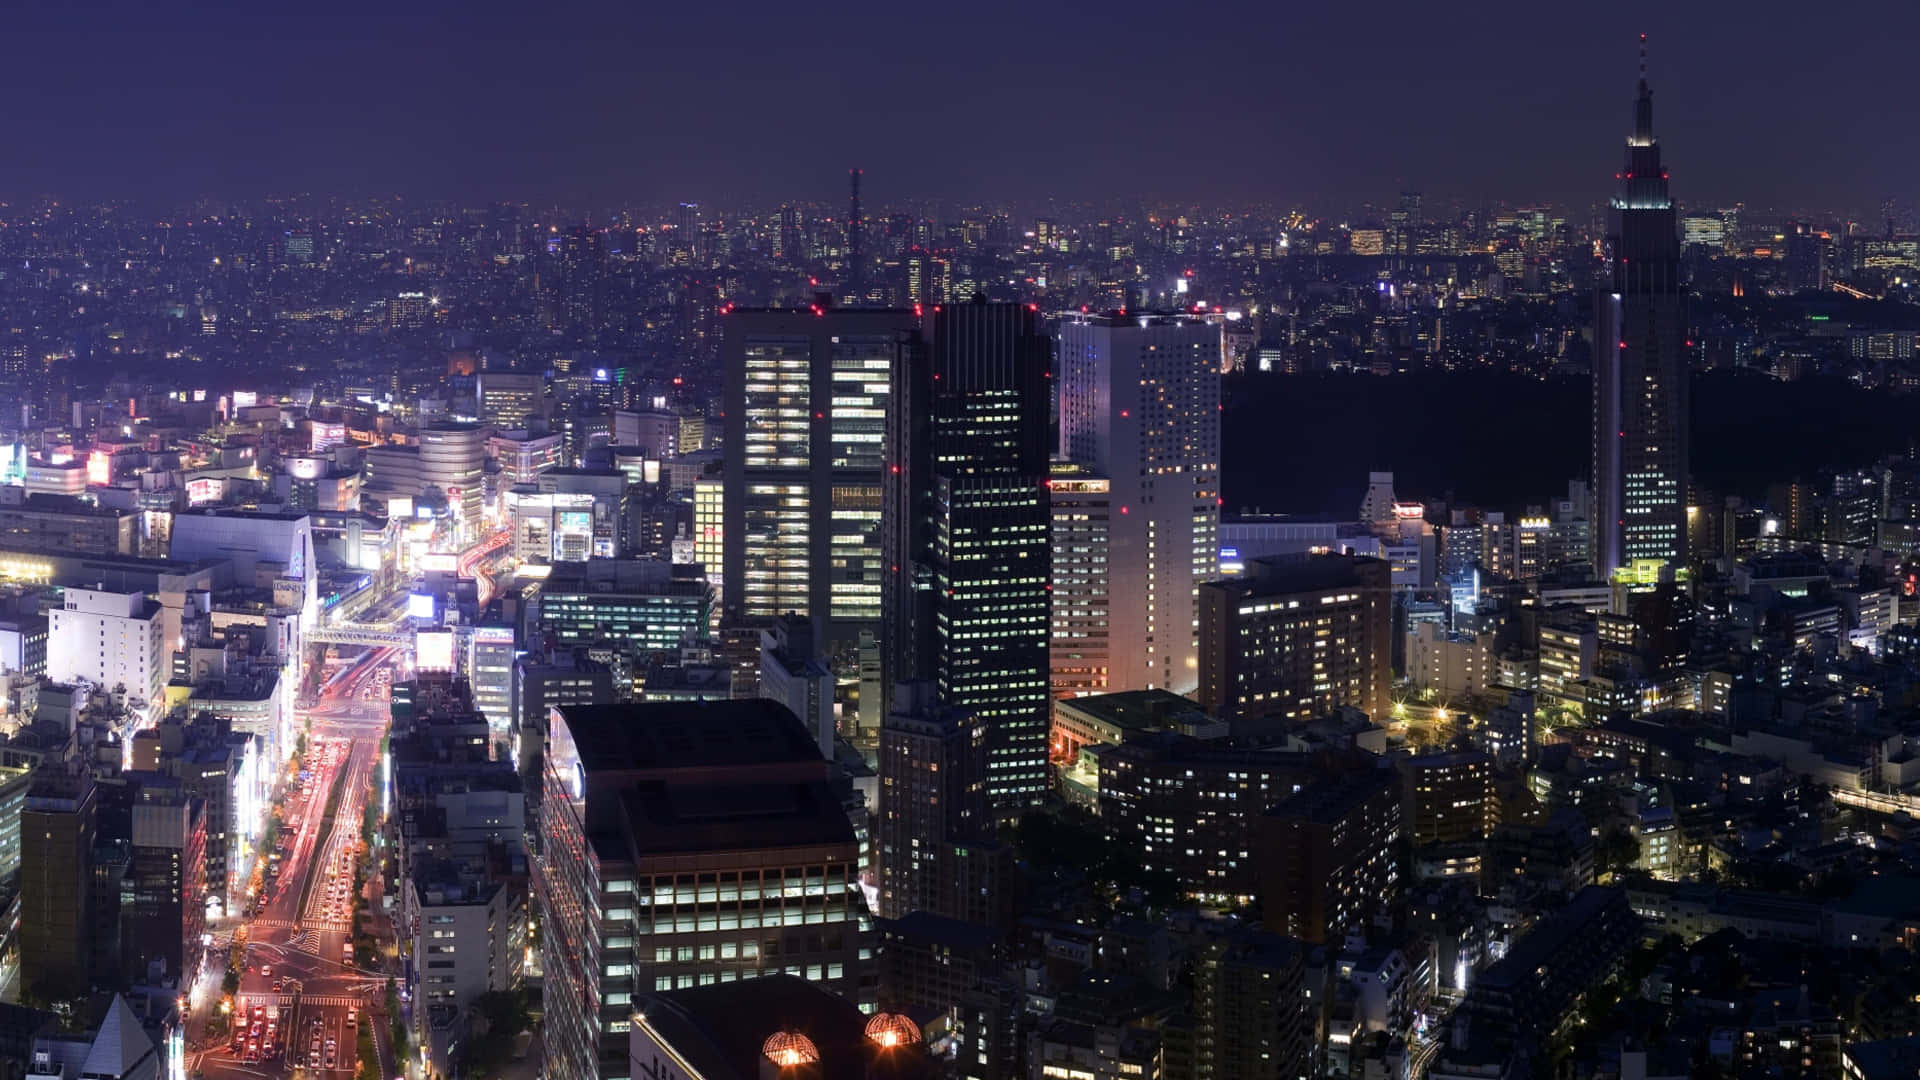 Imagensda Noite Da Cidade De Tóquio.